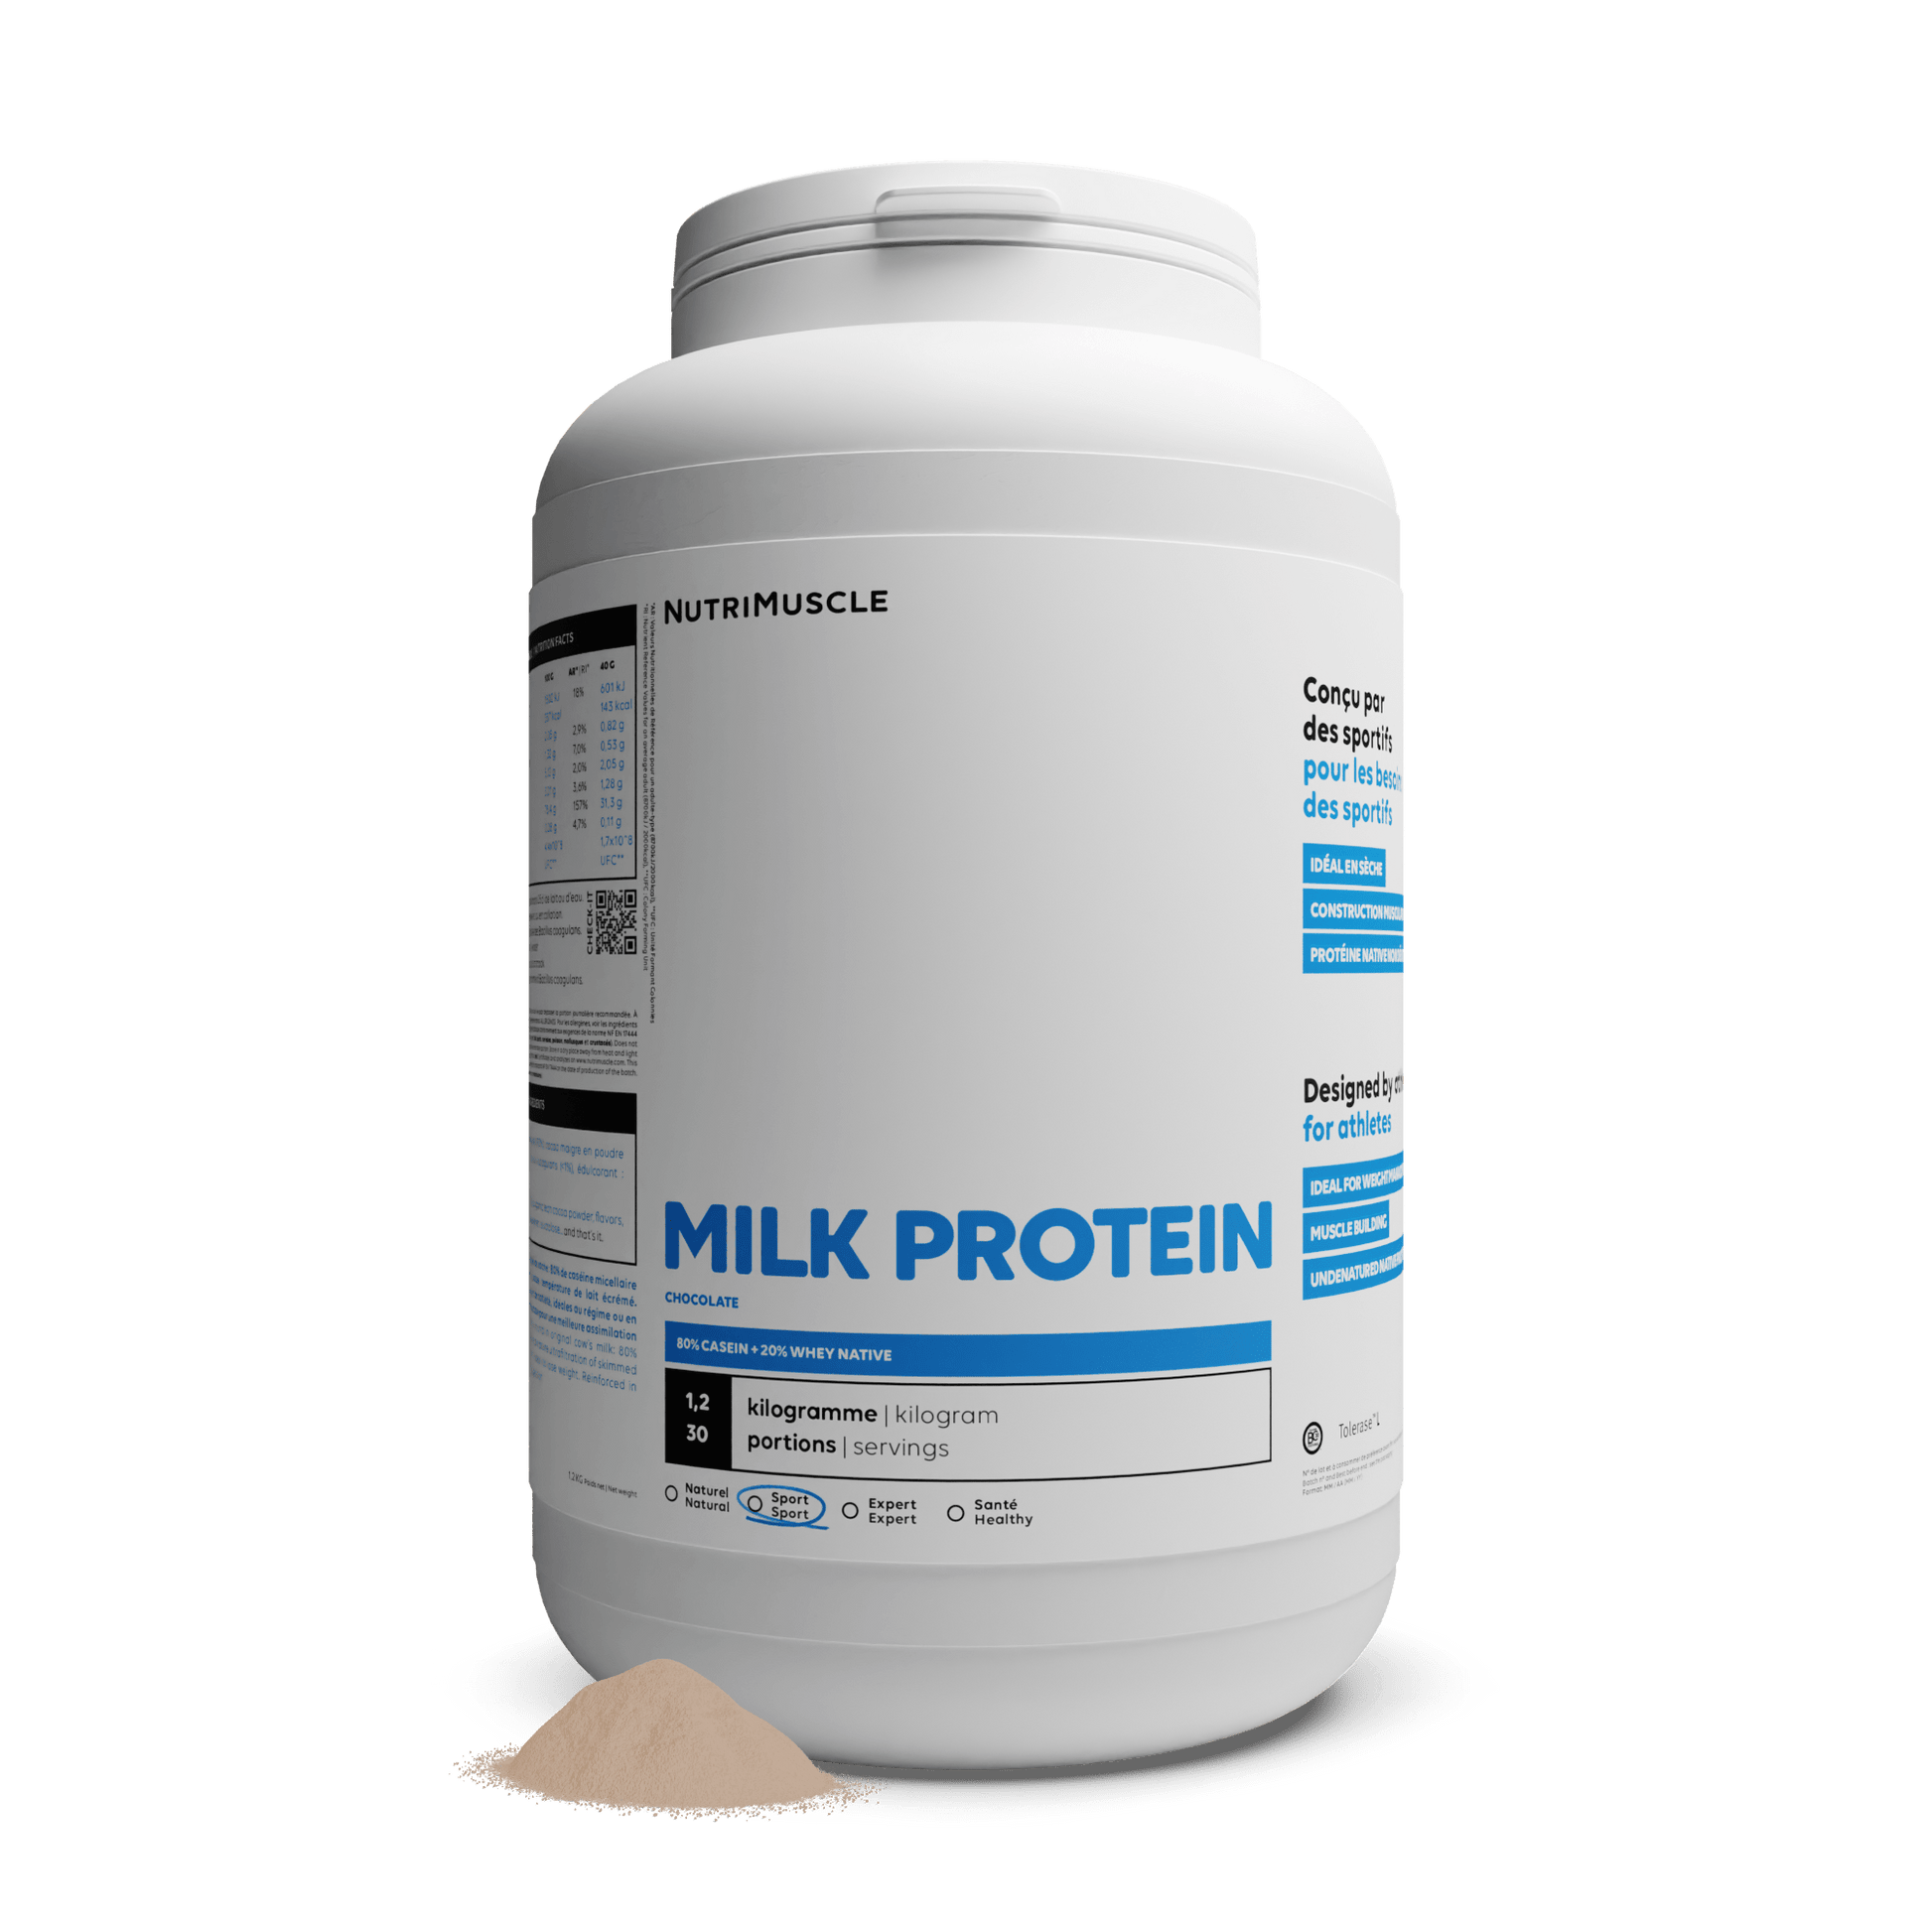 Nutrimuscle Protéines Chocolat / 1.20 kg Protéines Totales